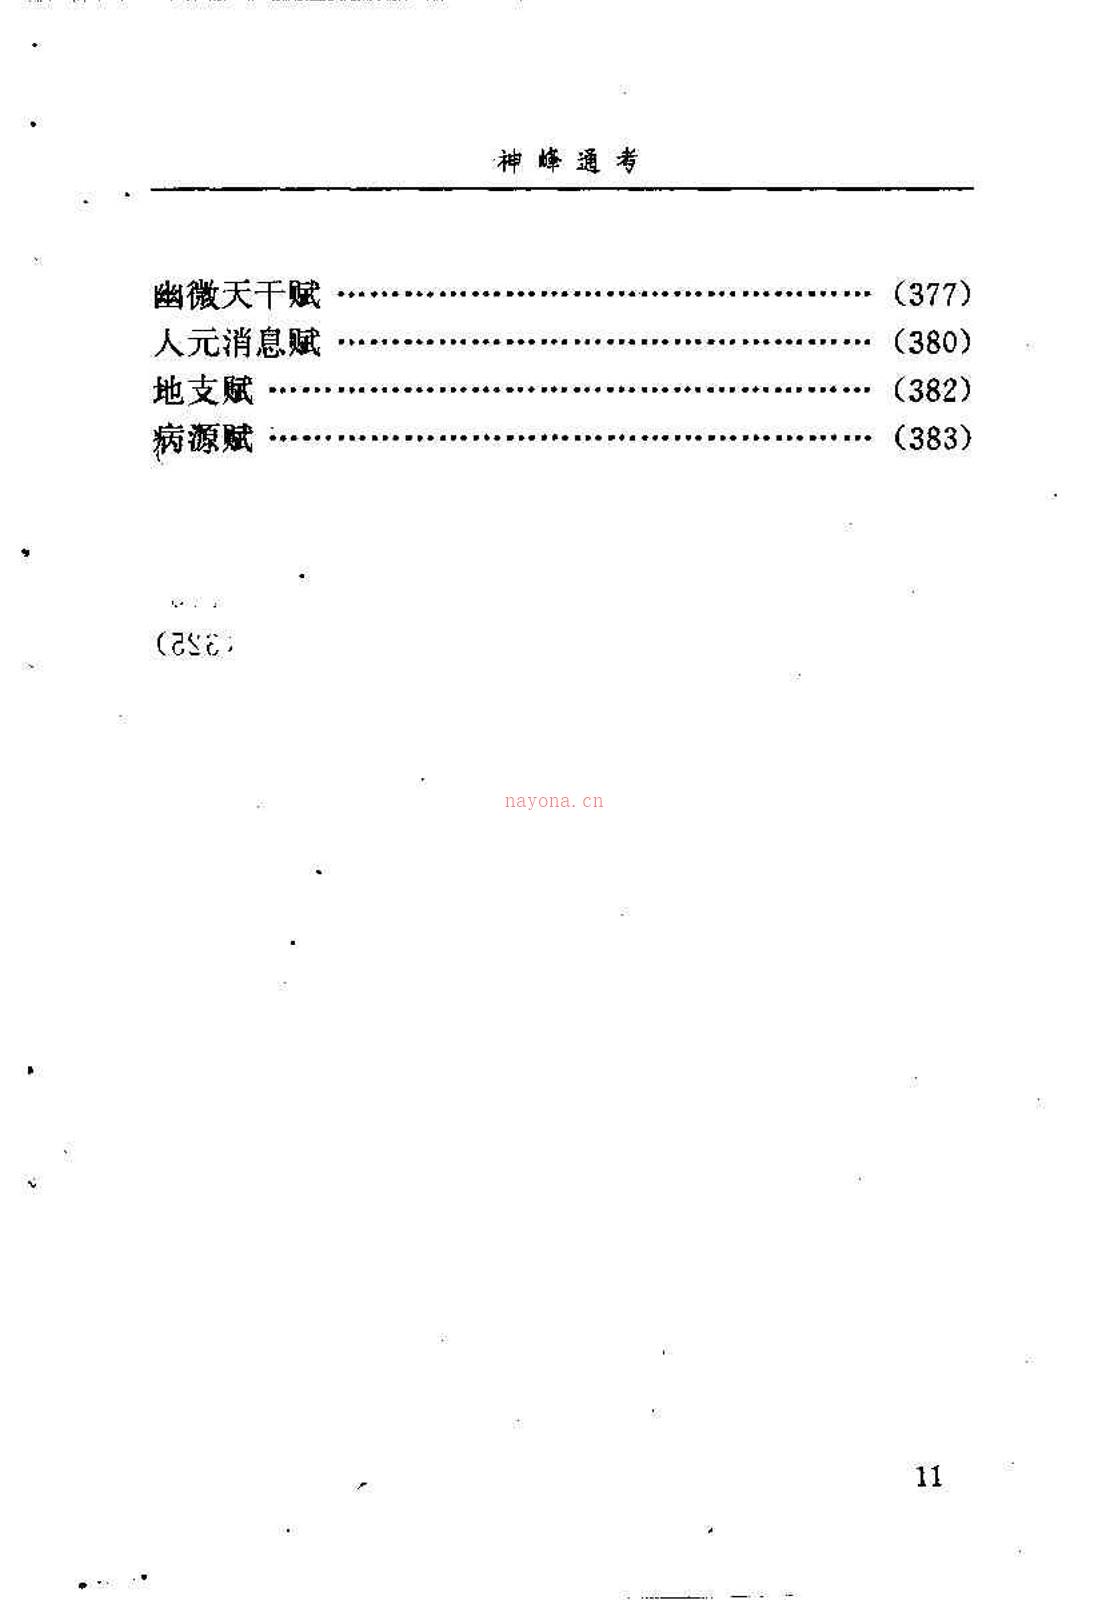 邵伟华点校-神峰通考 397页.pdf 百度网盘资源